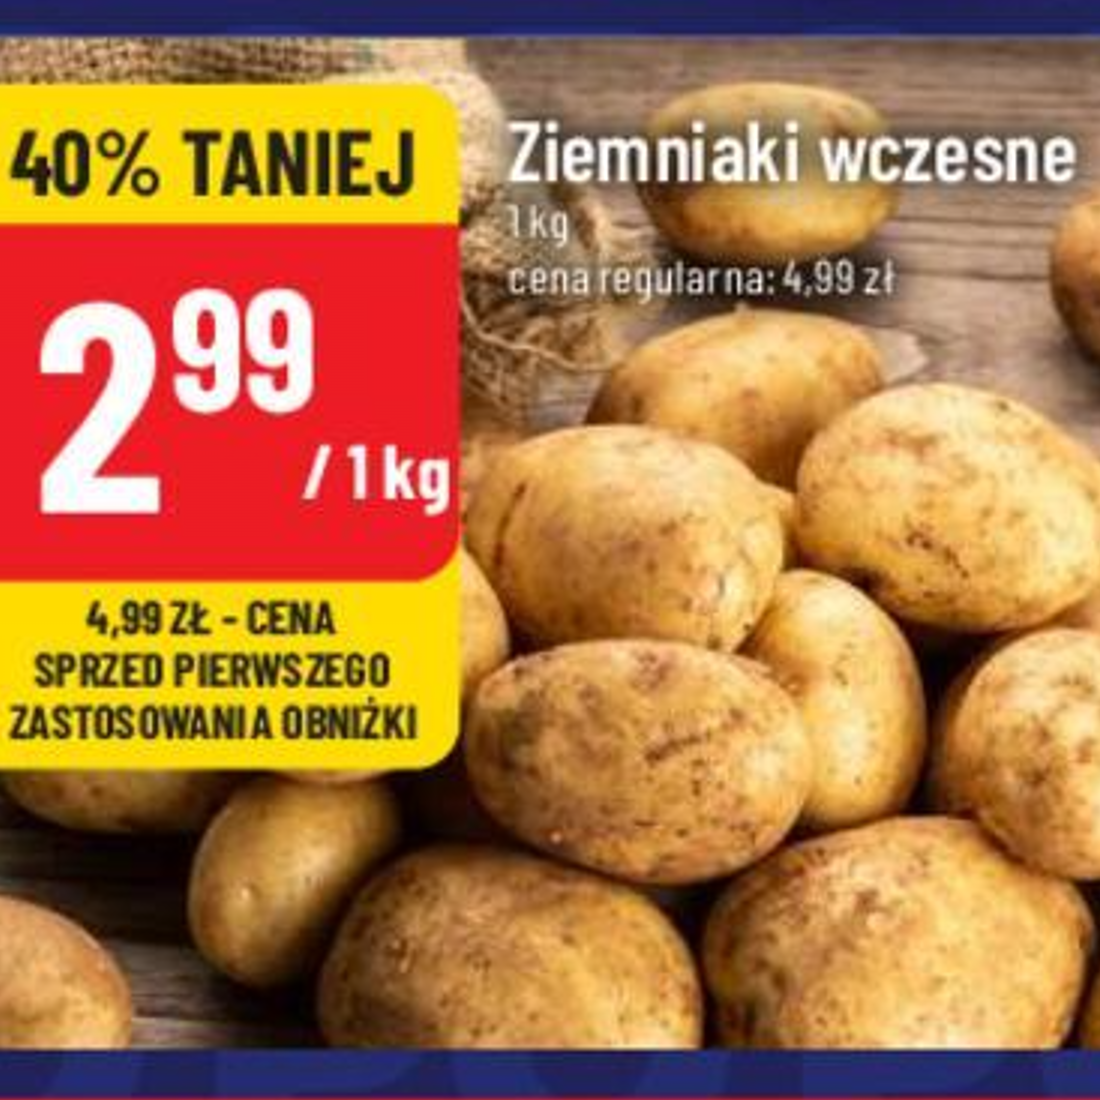 Polomarket prezentuje: Ziemniaki wczesne w atrakcyjnej cenie!